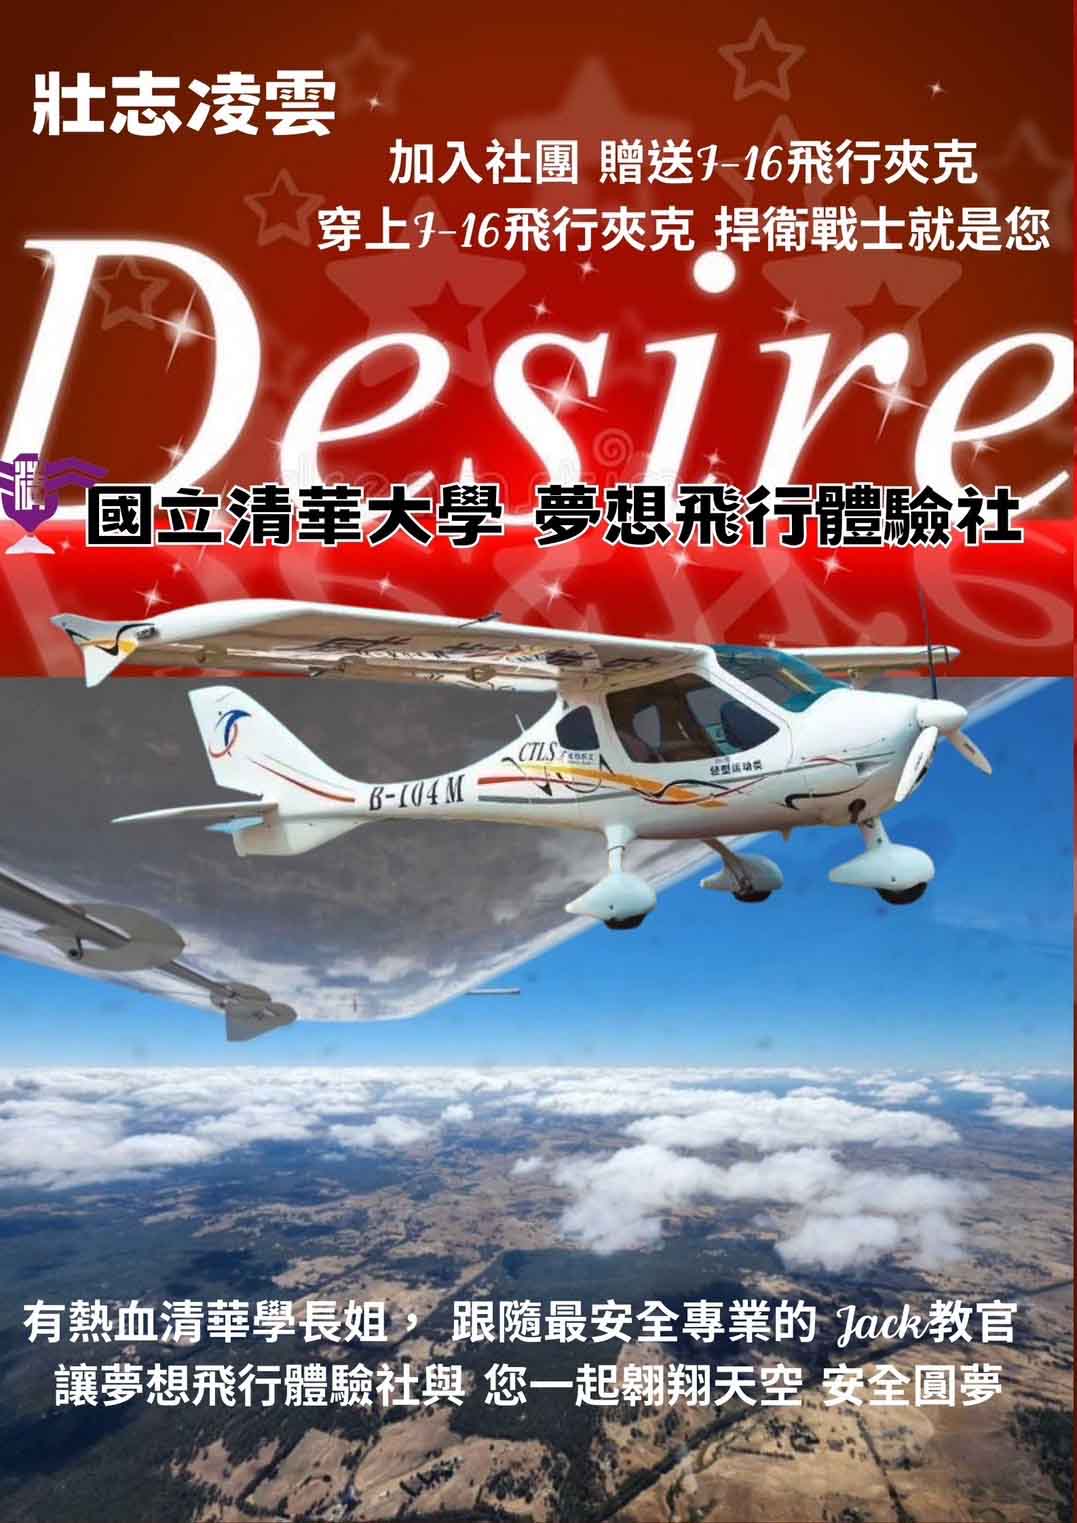 國立清華大學 科管院在職專班-飛行夢想體驗社 招生